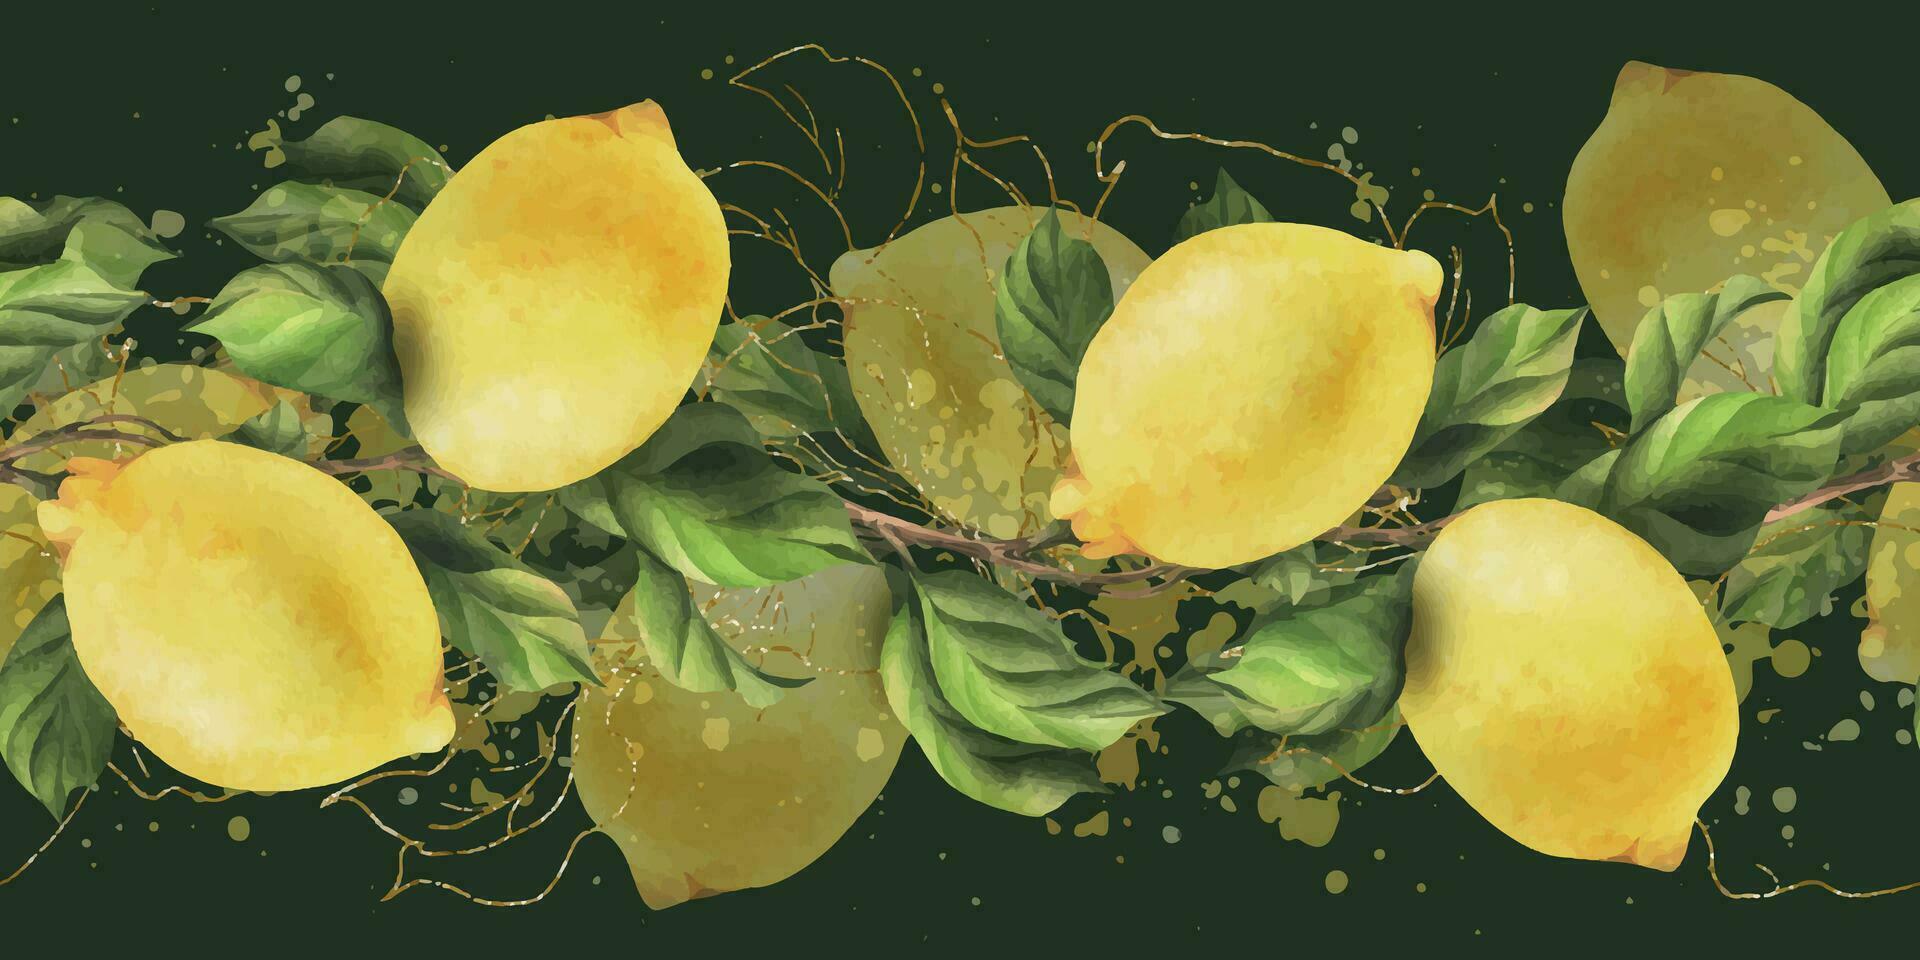 Zitronen sind Gelb, saftig, reif mit Grün Blätter, Blume Knospen auf das Geäst, ganz. Aquarell, Hand gezeichnet botanisch Illustration. nahtlos Rand auf ein dunkel Grün Hintergrund vektor